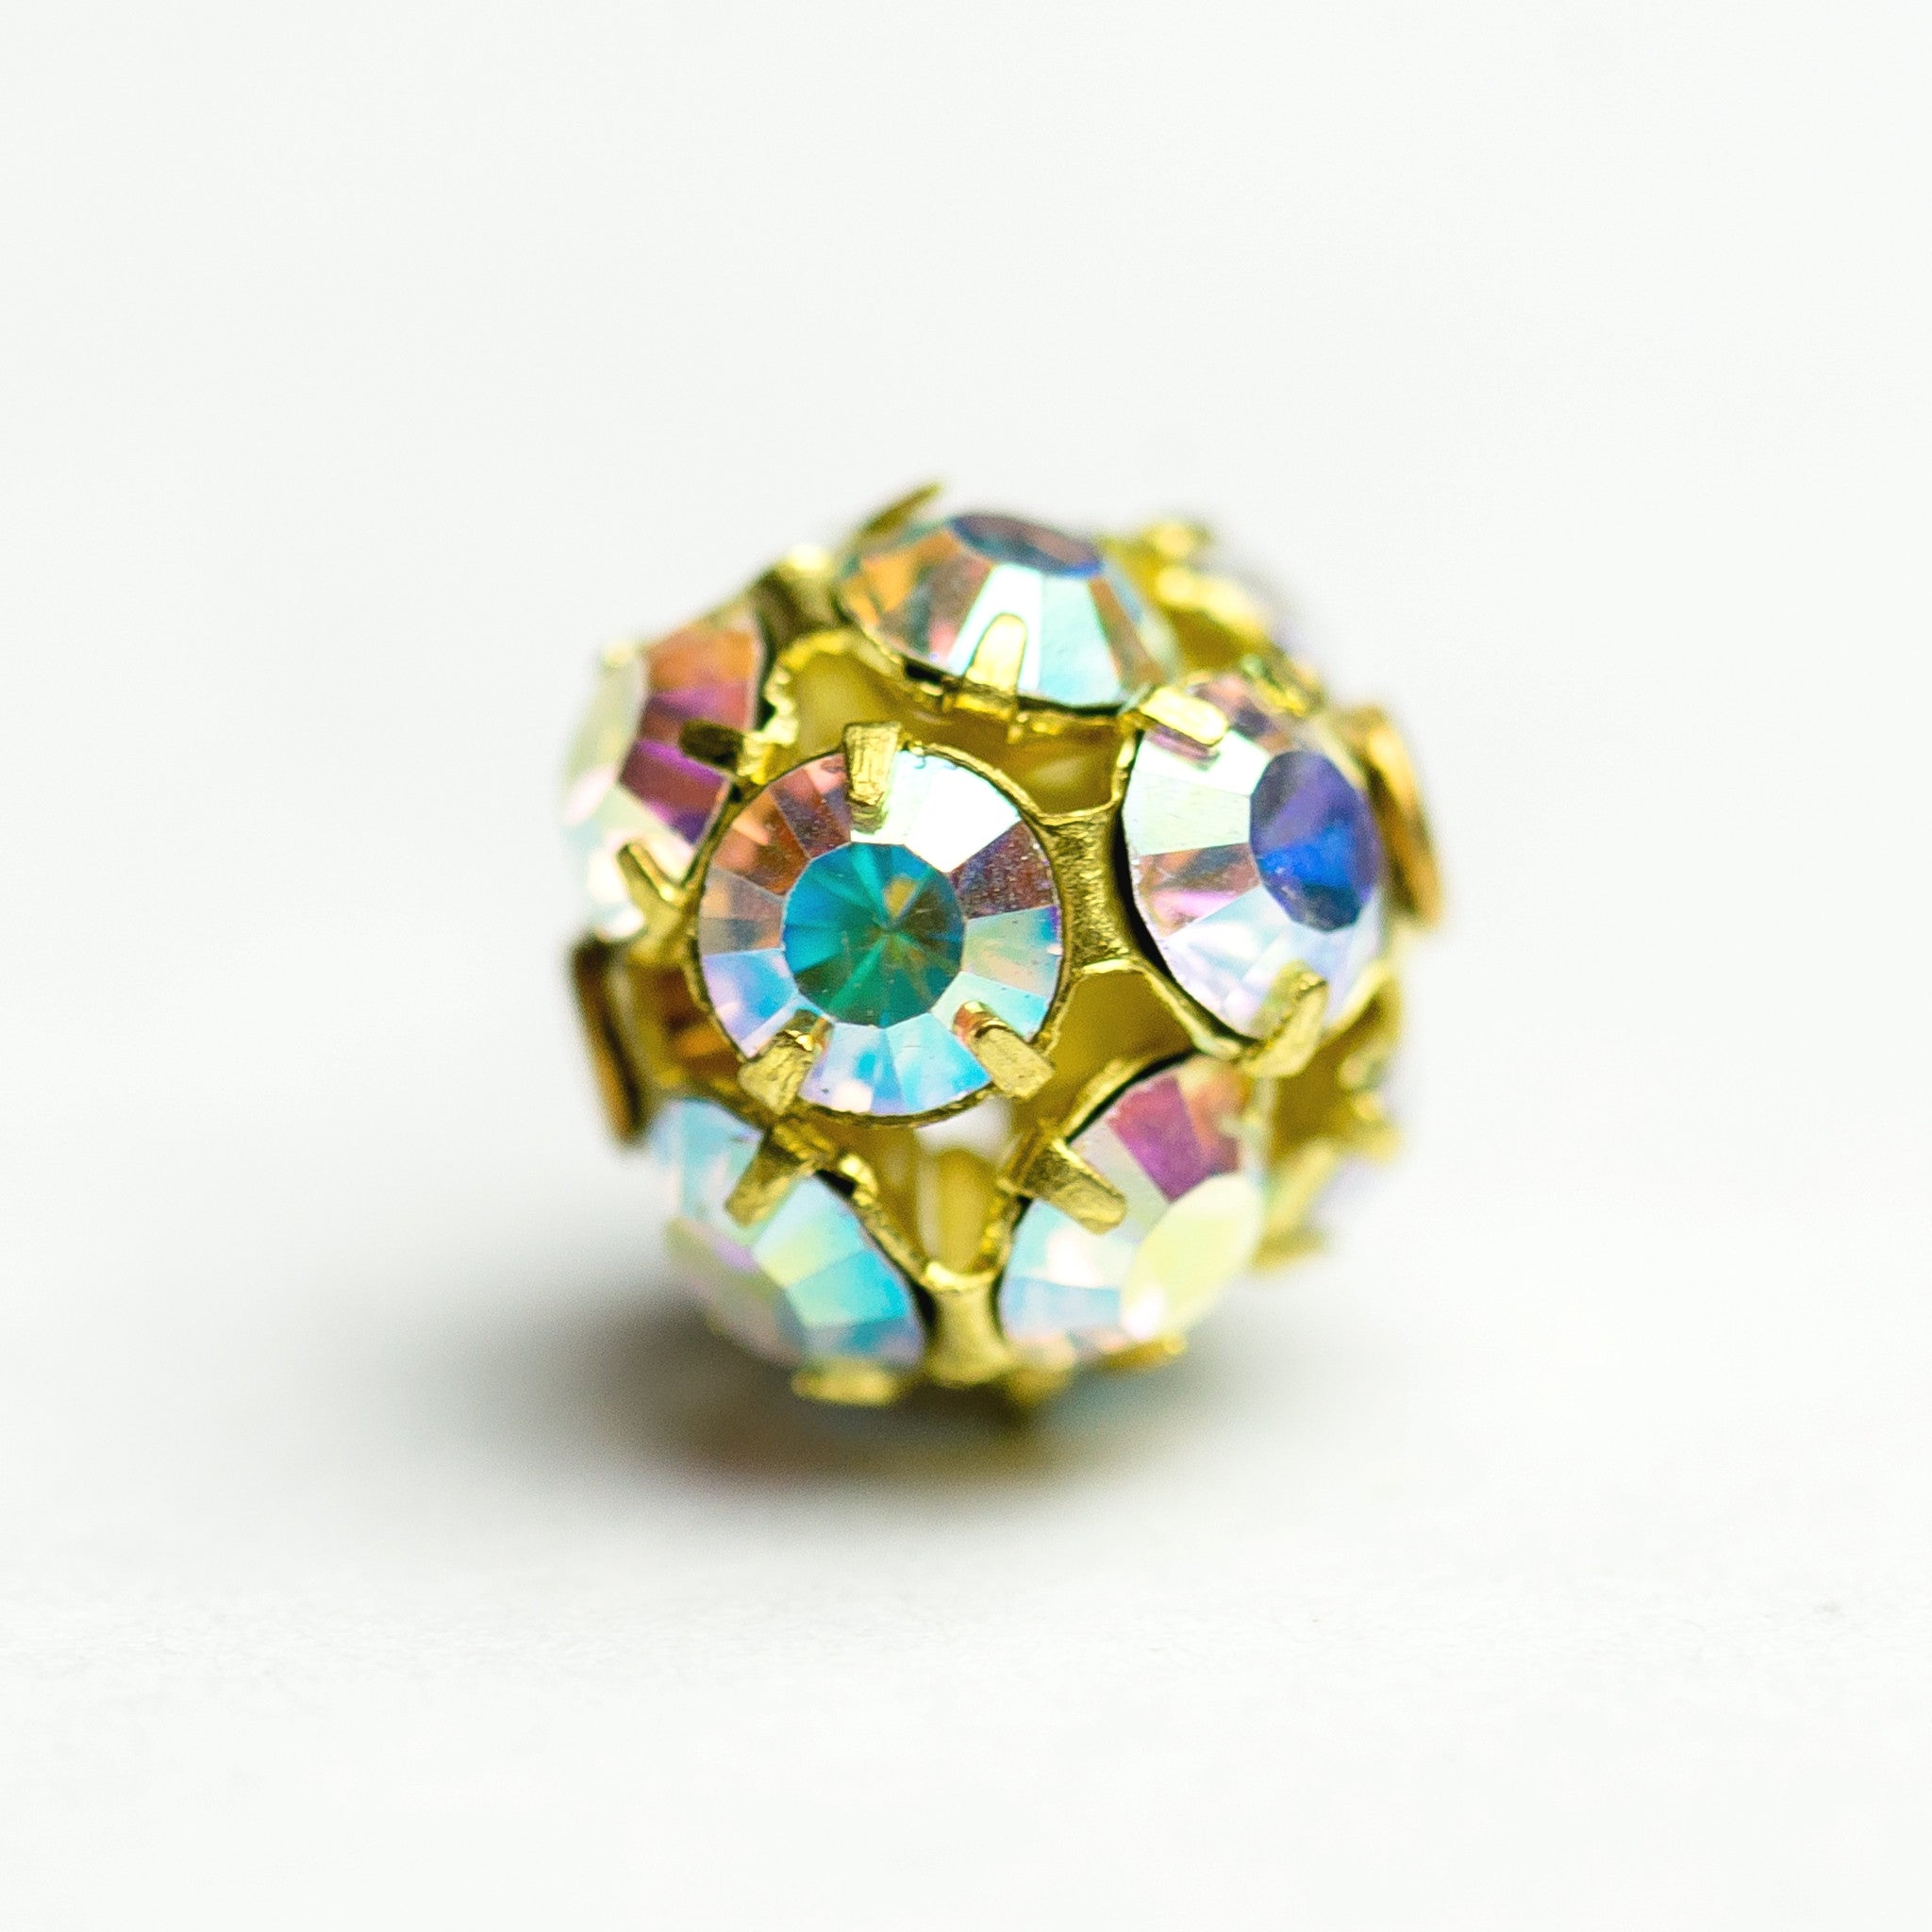 10MM Rhinestone Ball Crystal Ab/Brass (2 pieces)